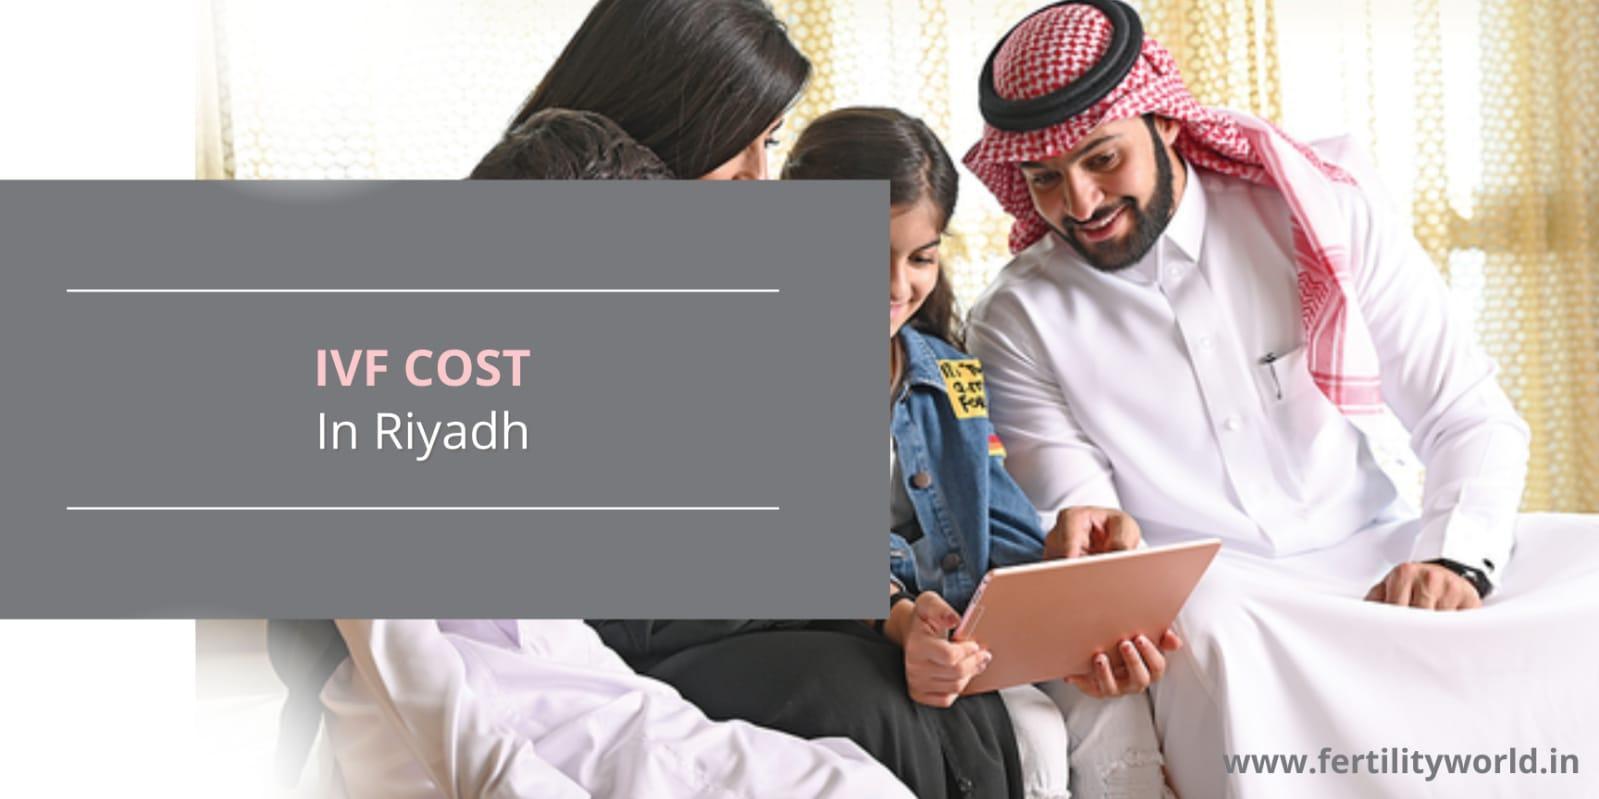 IVF Cost in Riyadh